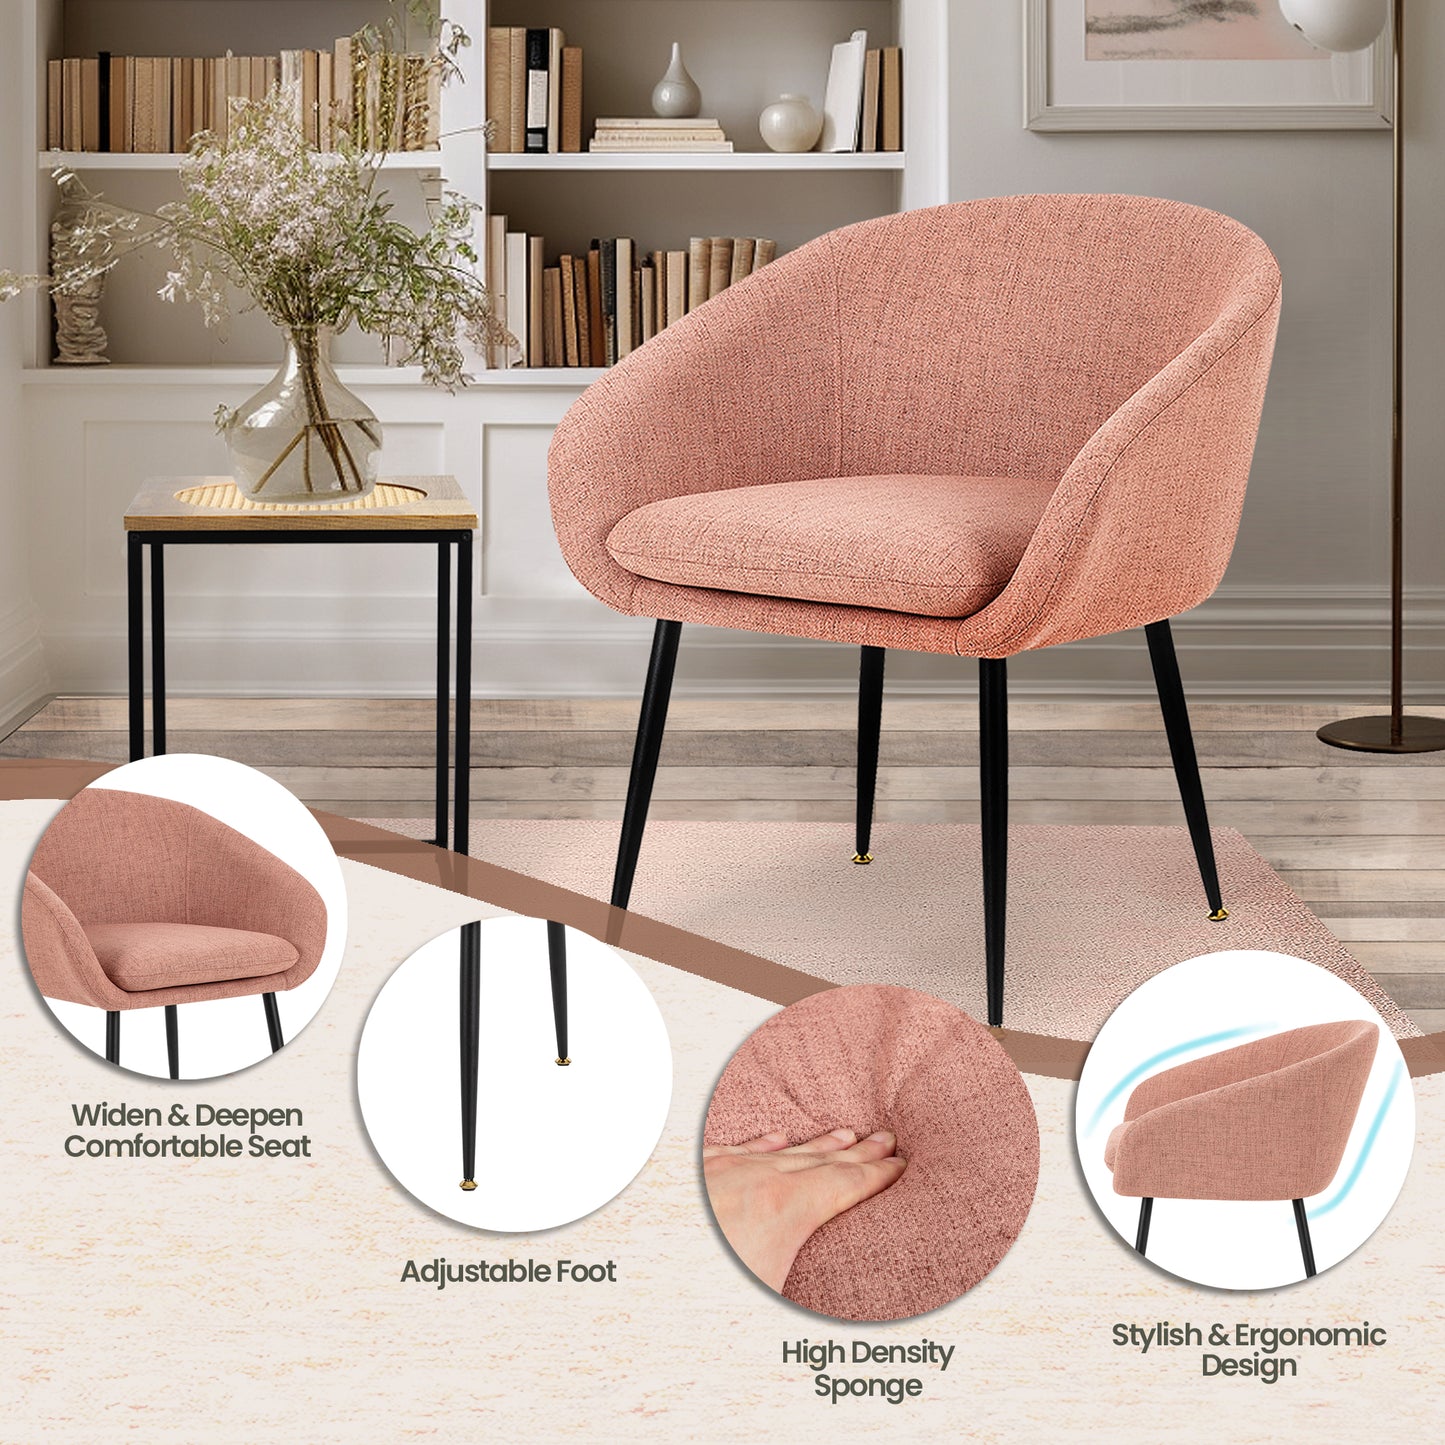 Modern luxury pink chair